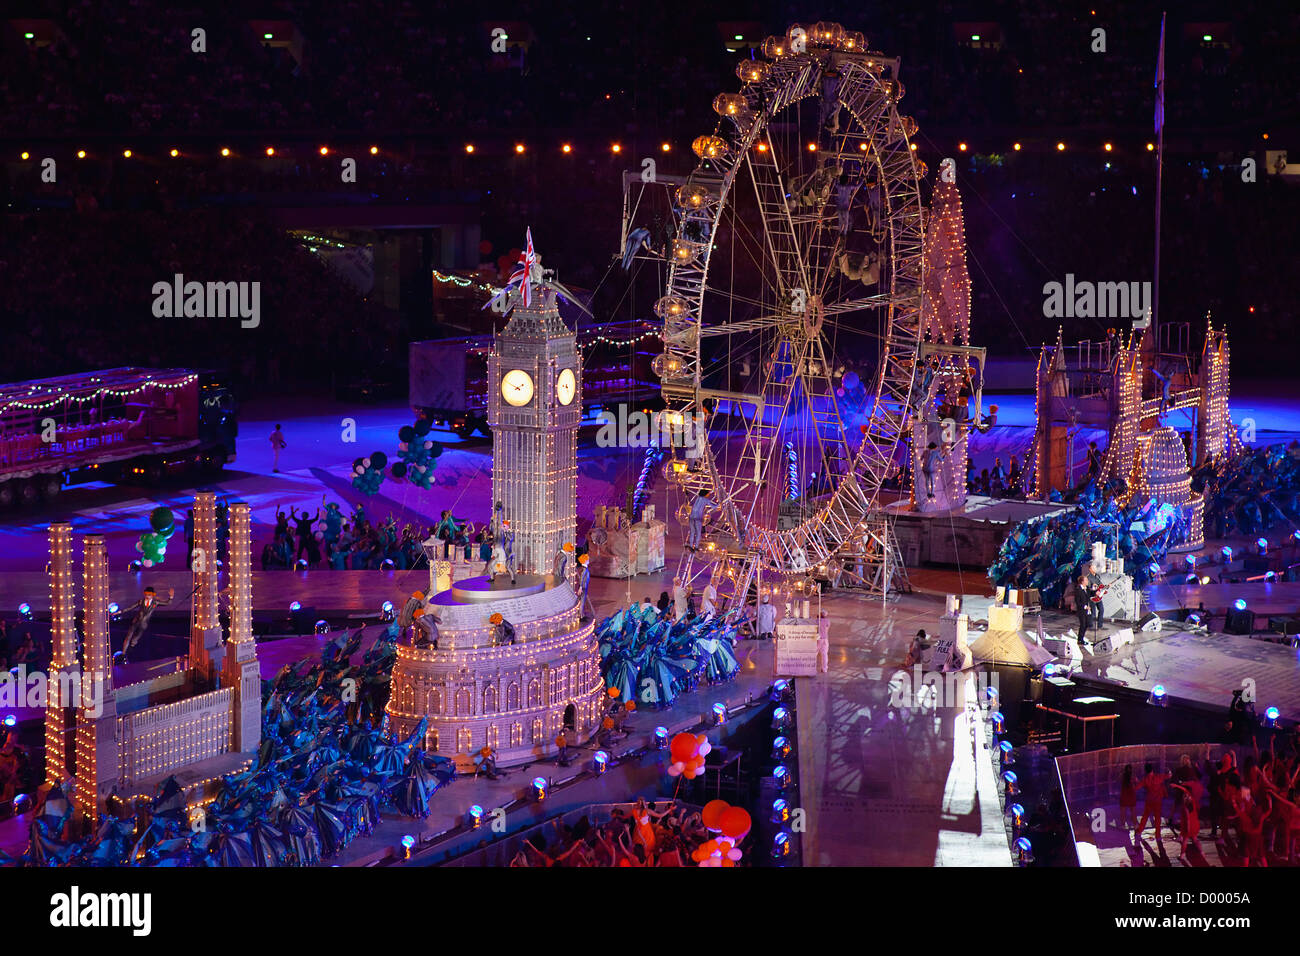 Inghilterra, Londra, Stratford, giochi olimpici cerimonia di chiusura la visualizzazione in stadium. Foto Stock